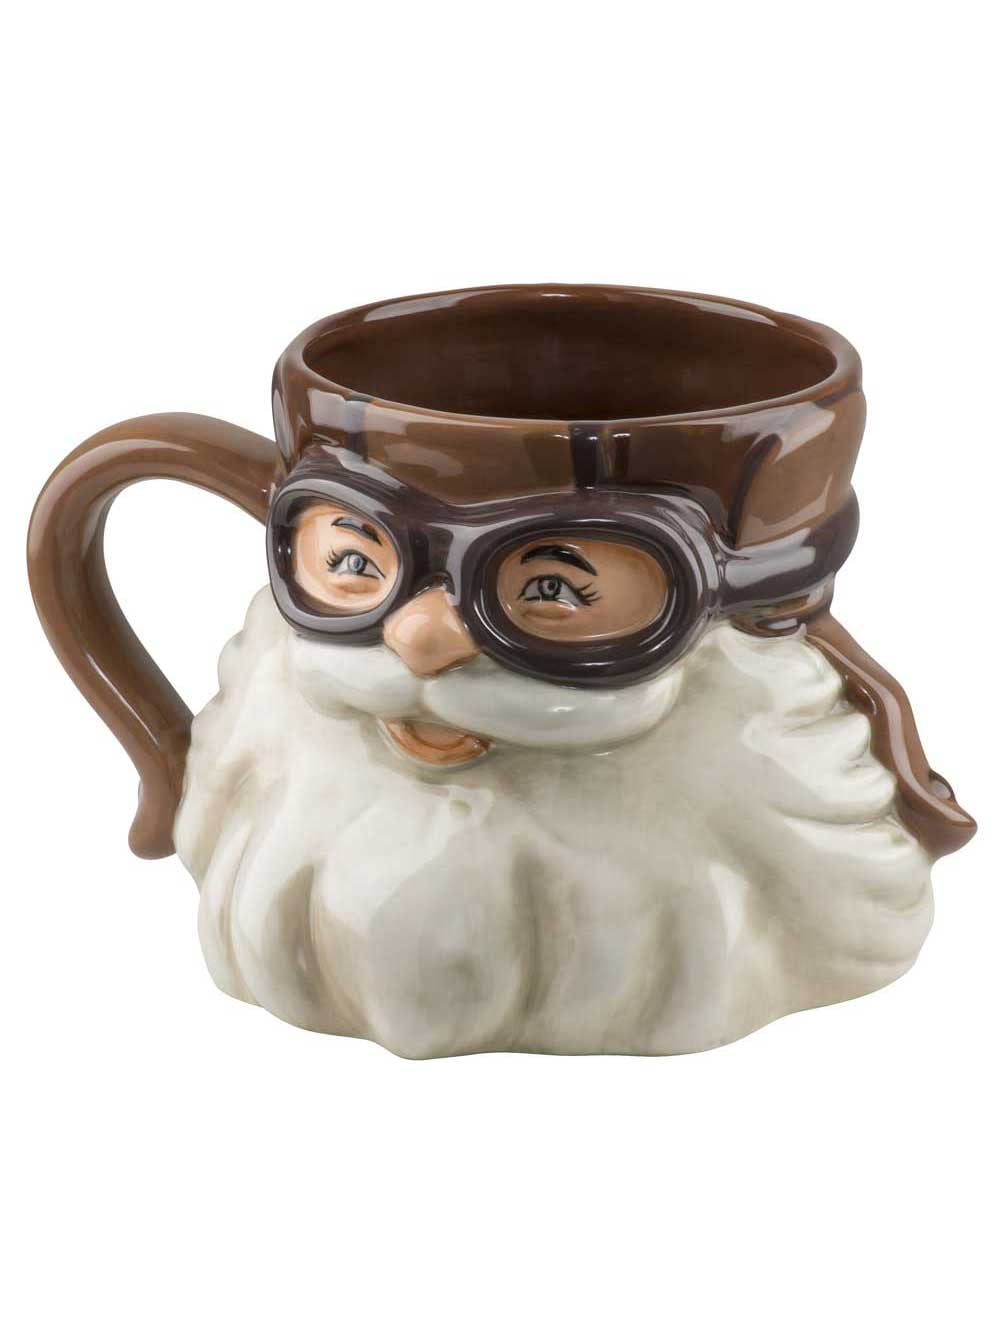 ~23 oz Handmade ceramic mug